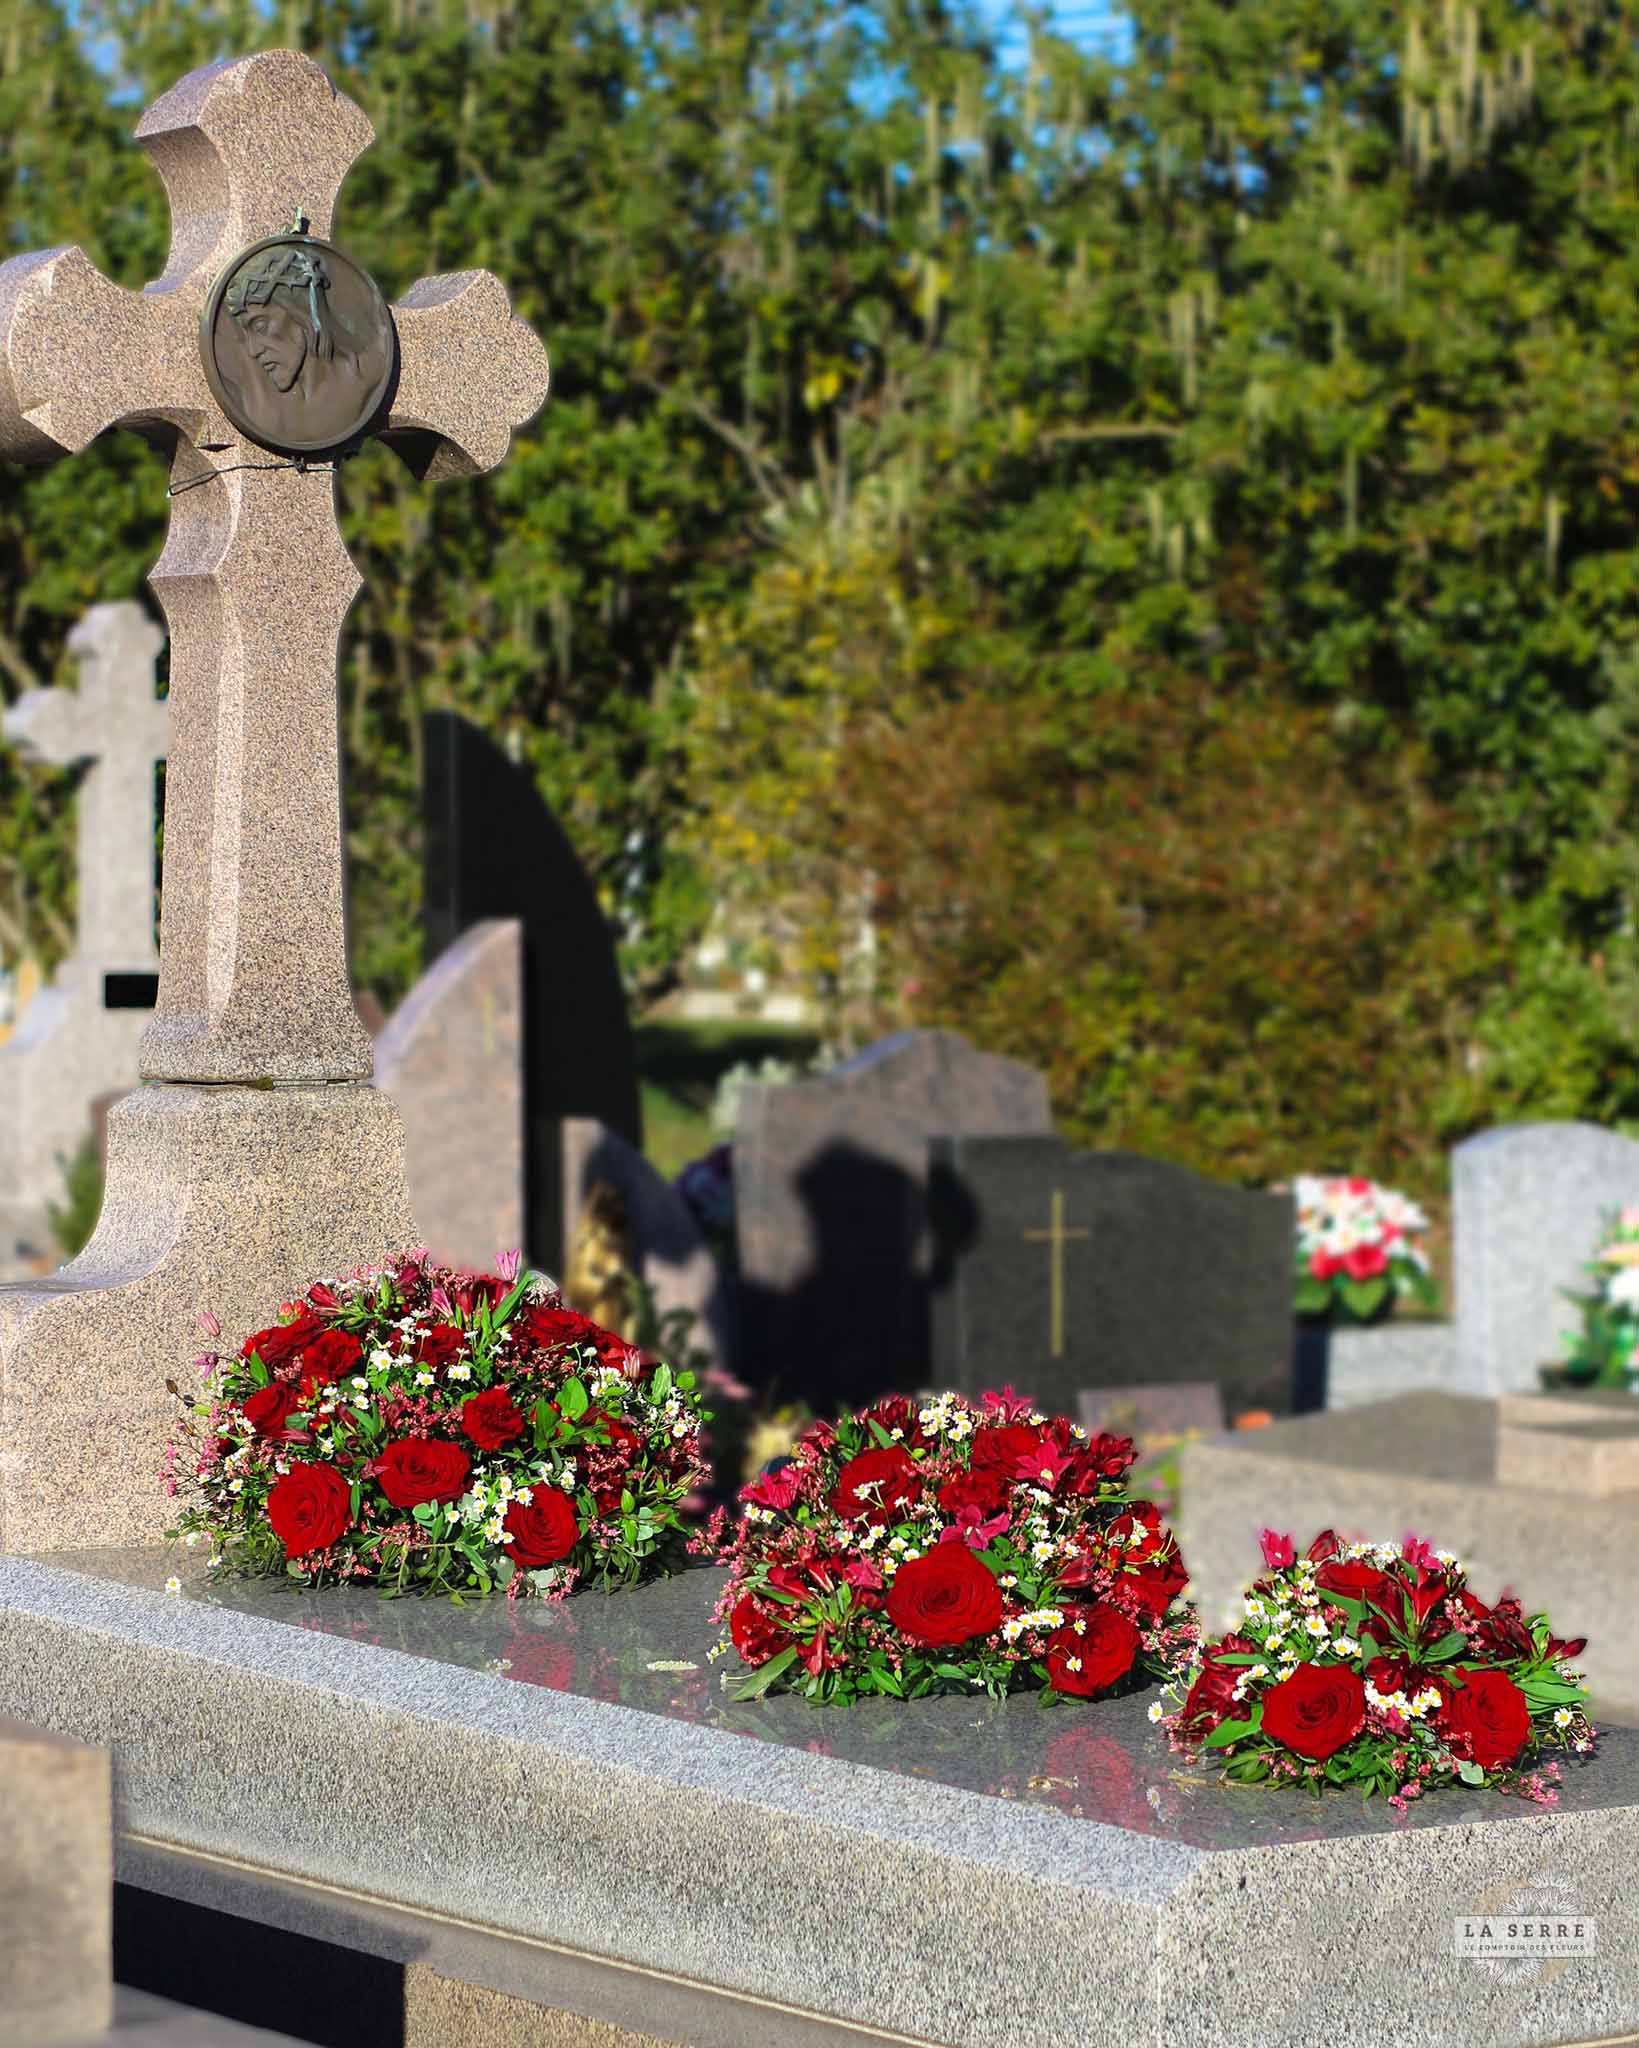 Coussin de fleurs pour enterrement. Livraison rapide à Nantes et sa périphérie. Fleuriste Nantes